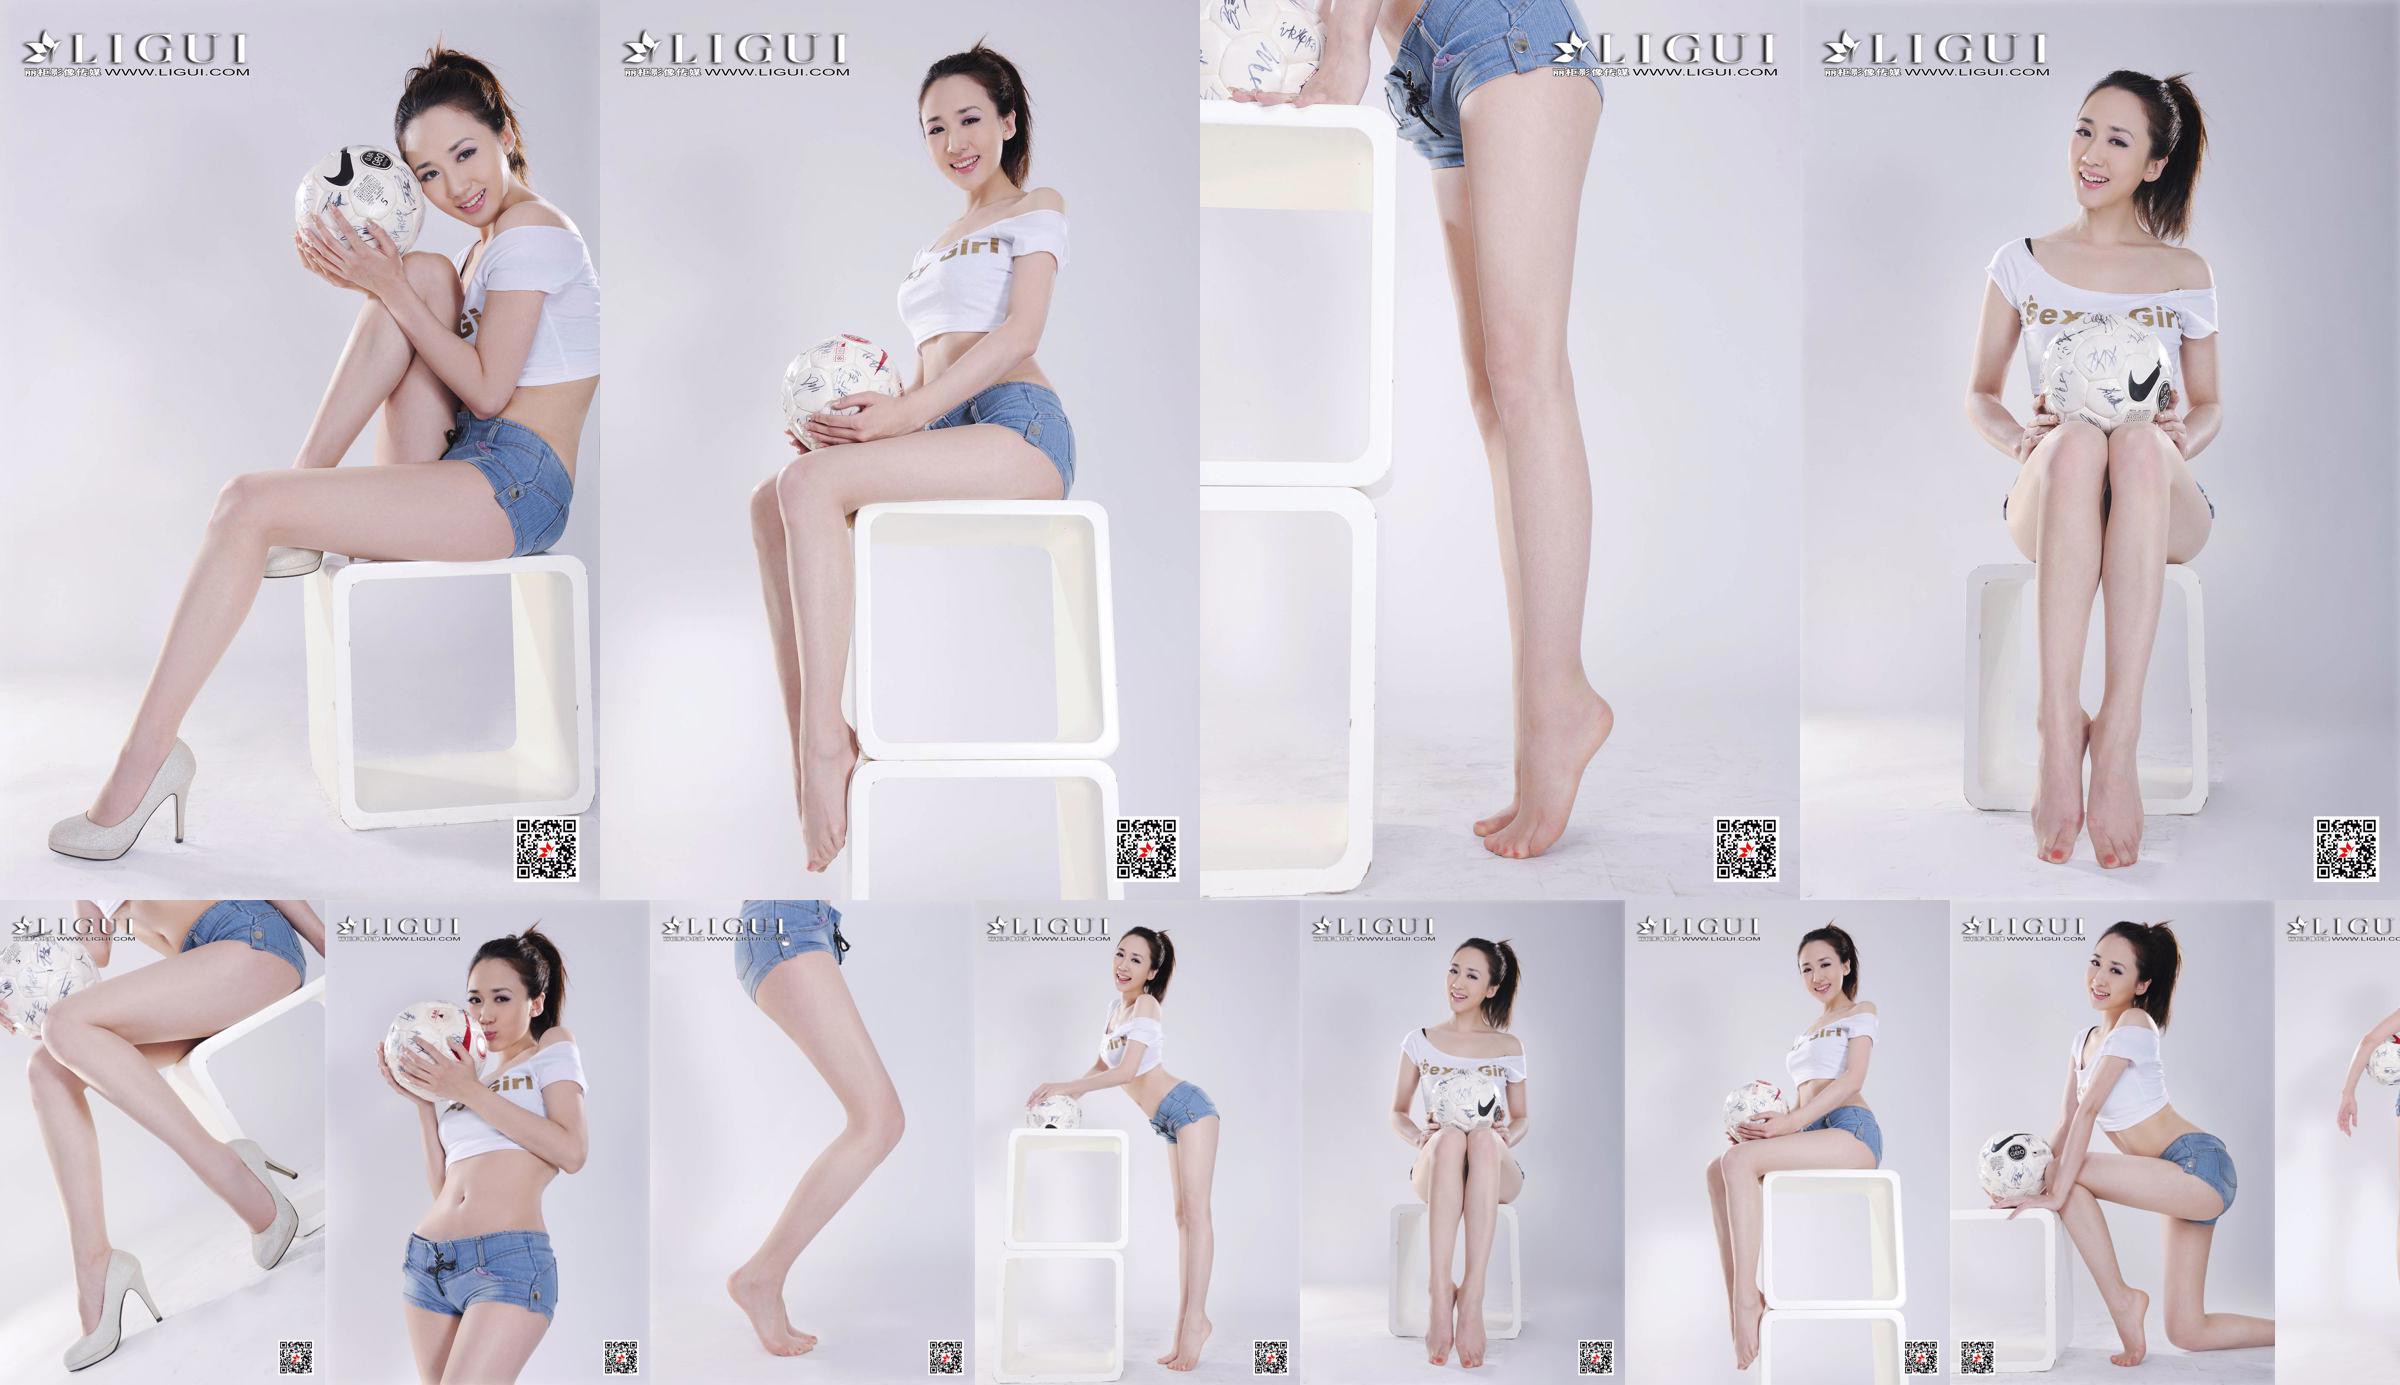 นางแบบ Qiu Chen "Super Short Hot Pants Football Girl" [LIGUI] No.a16337 หน้า 1